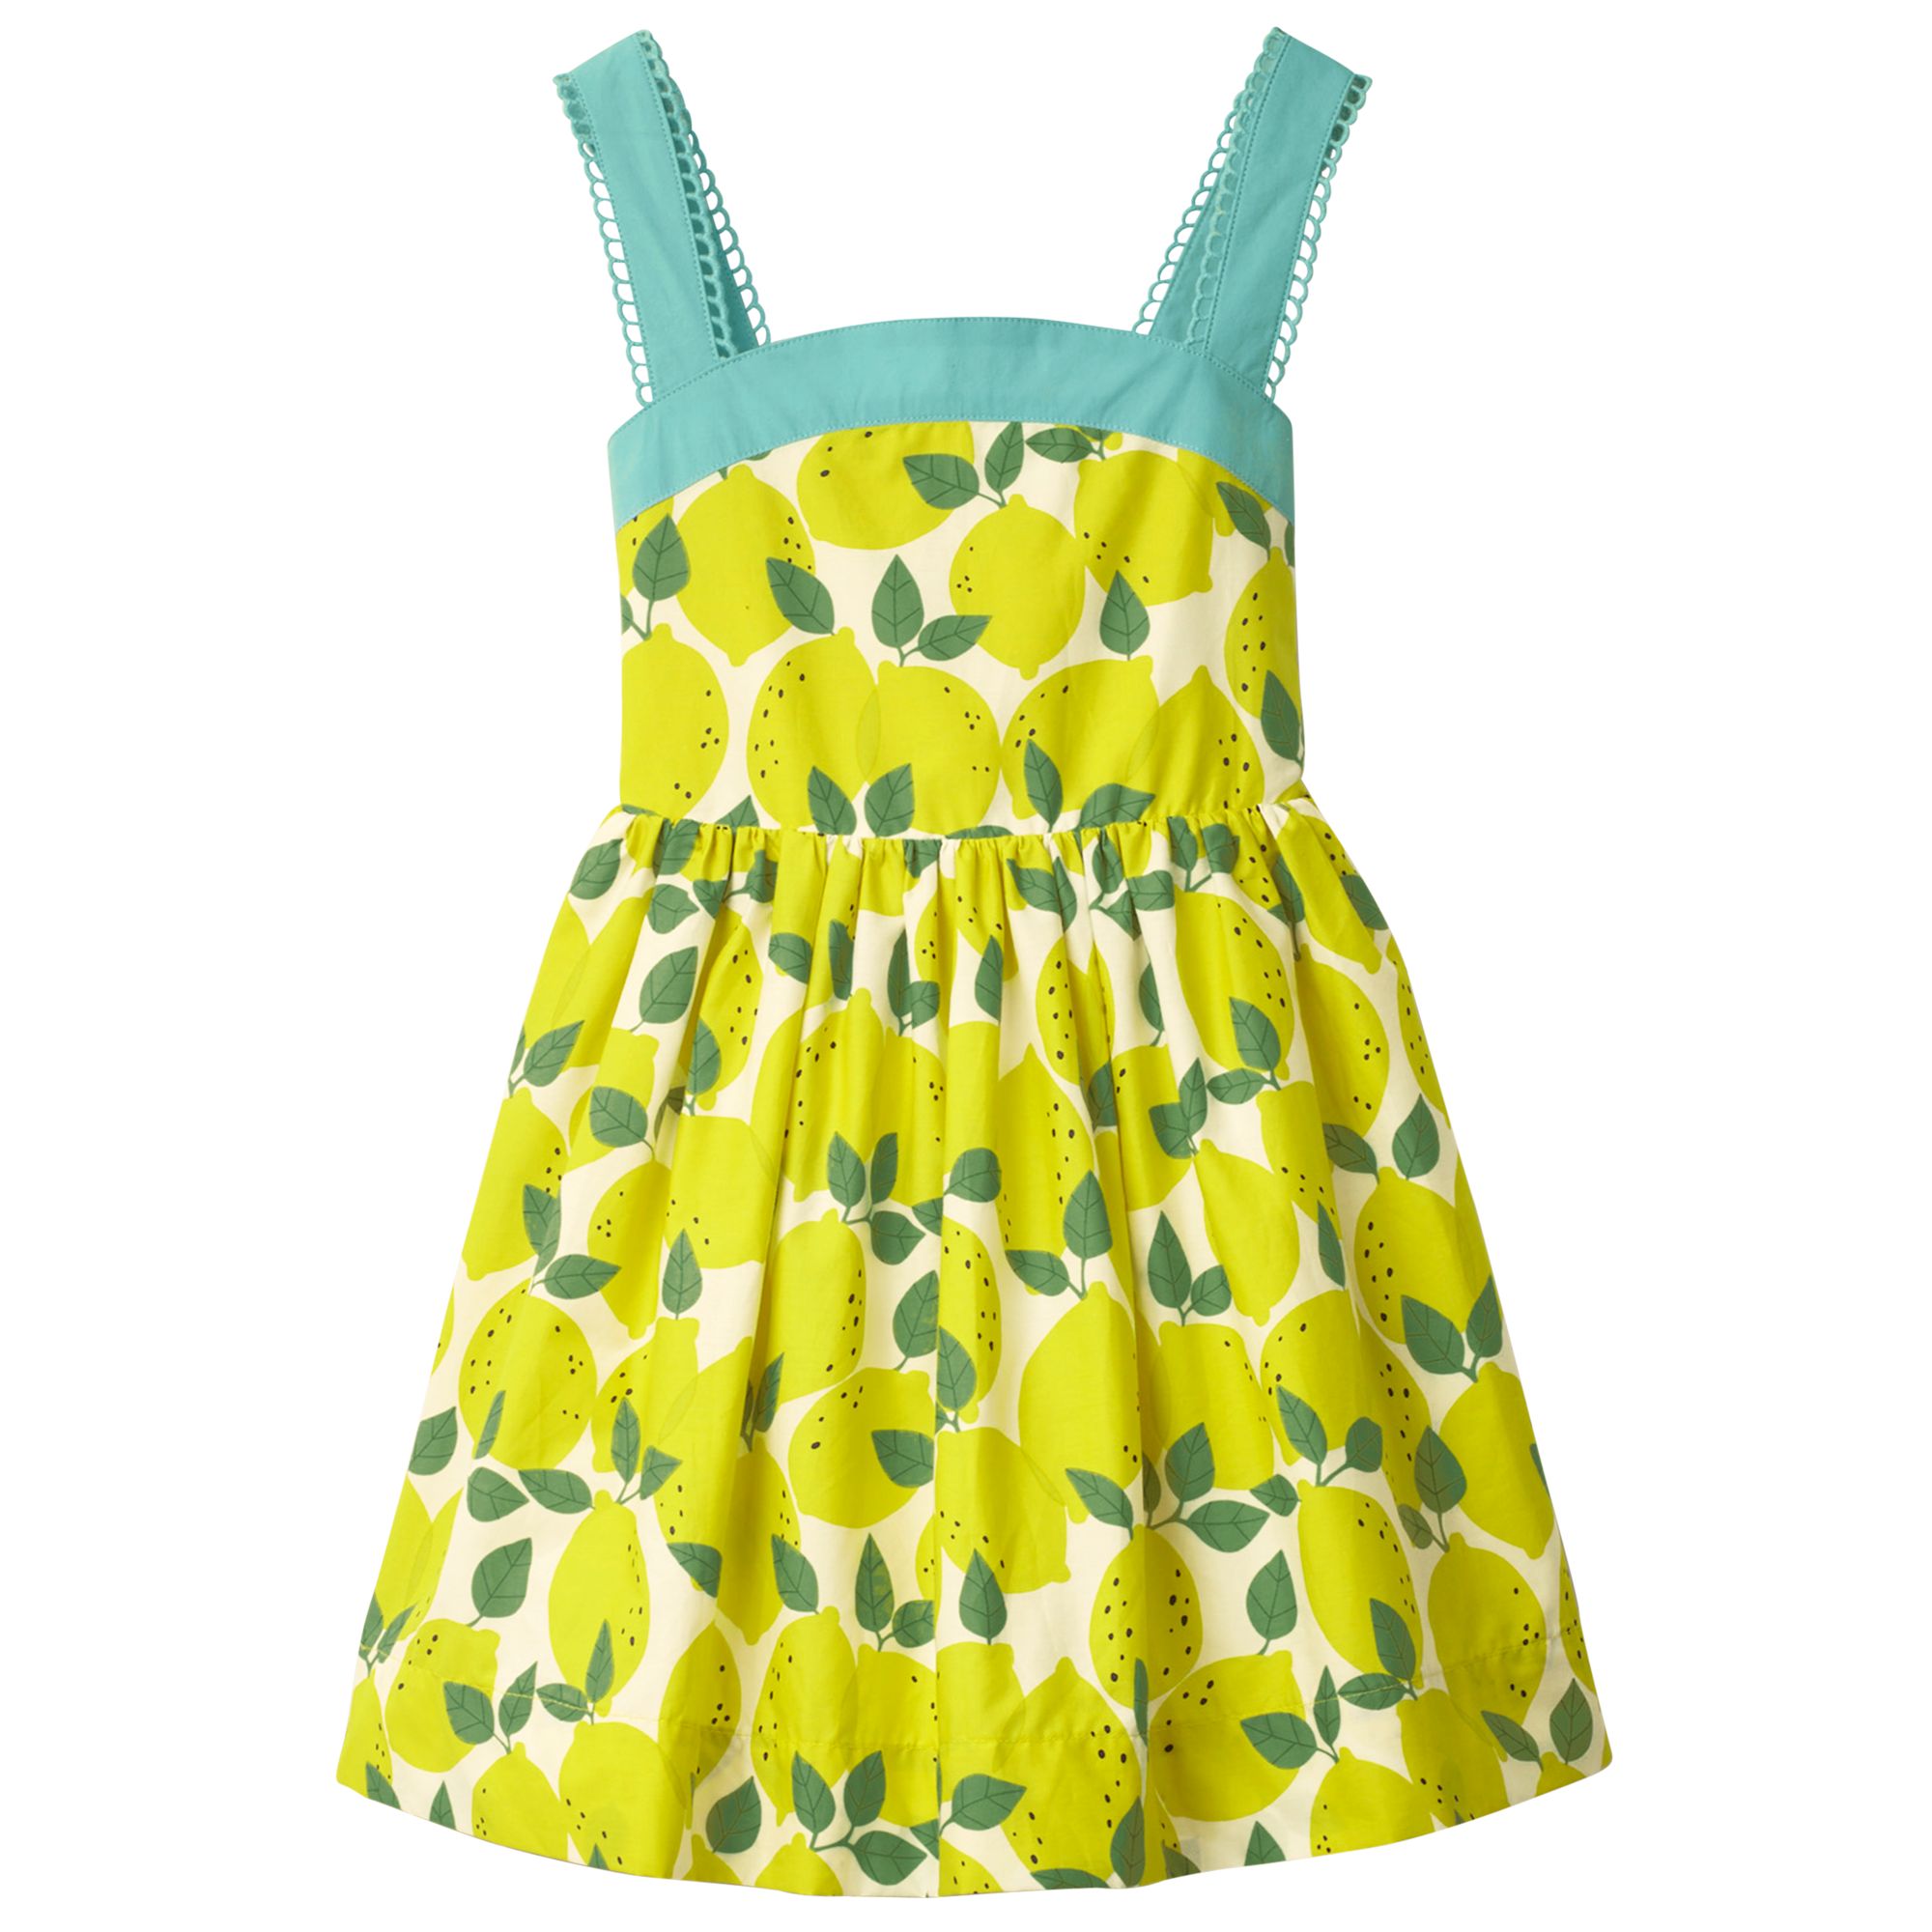 Mini boden lemon dress